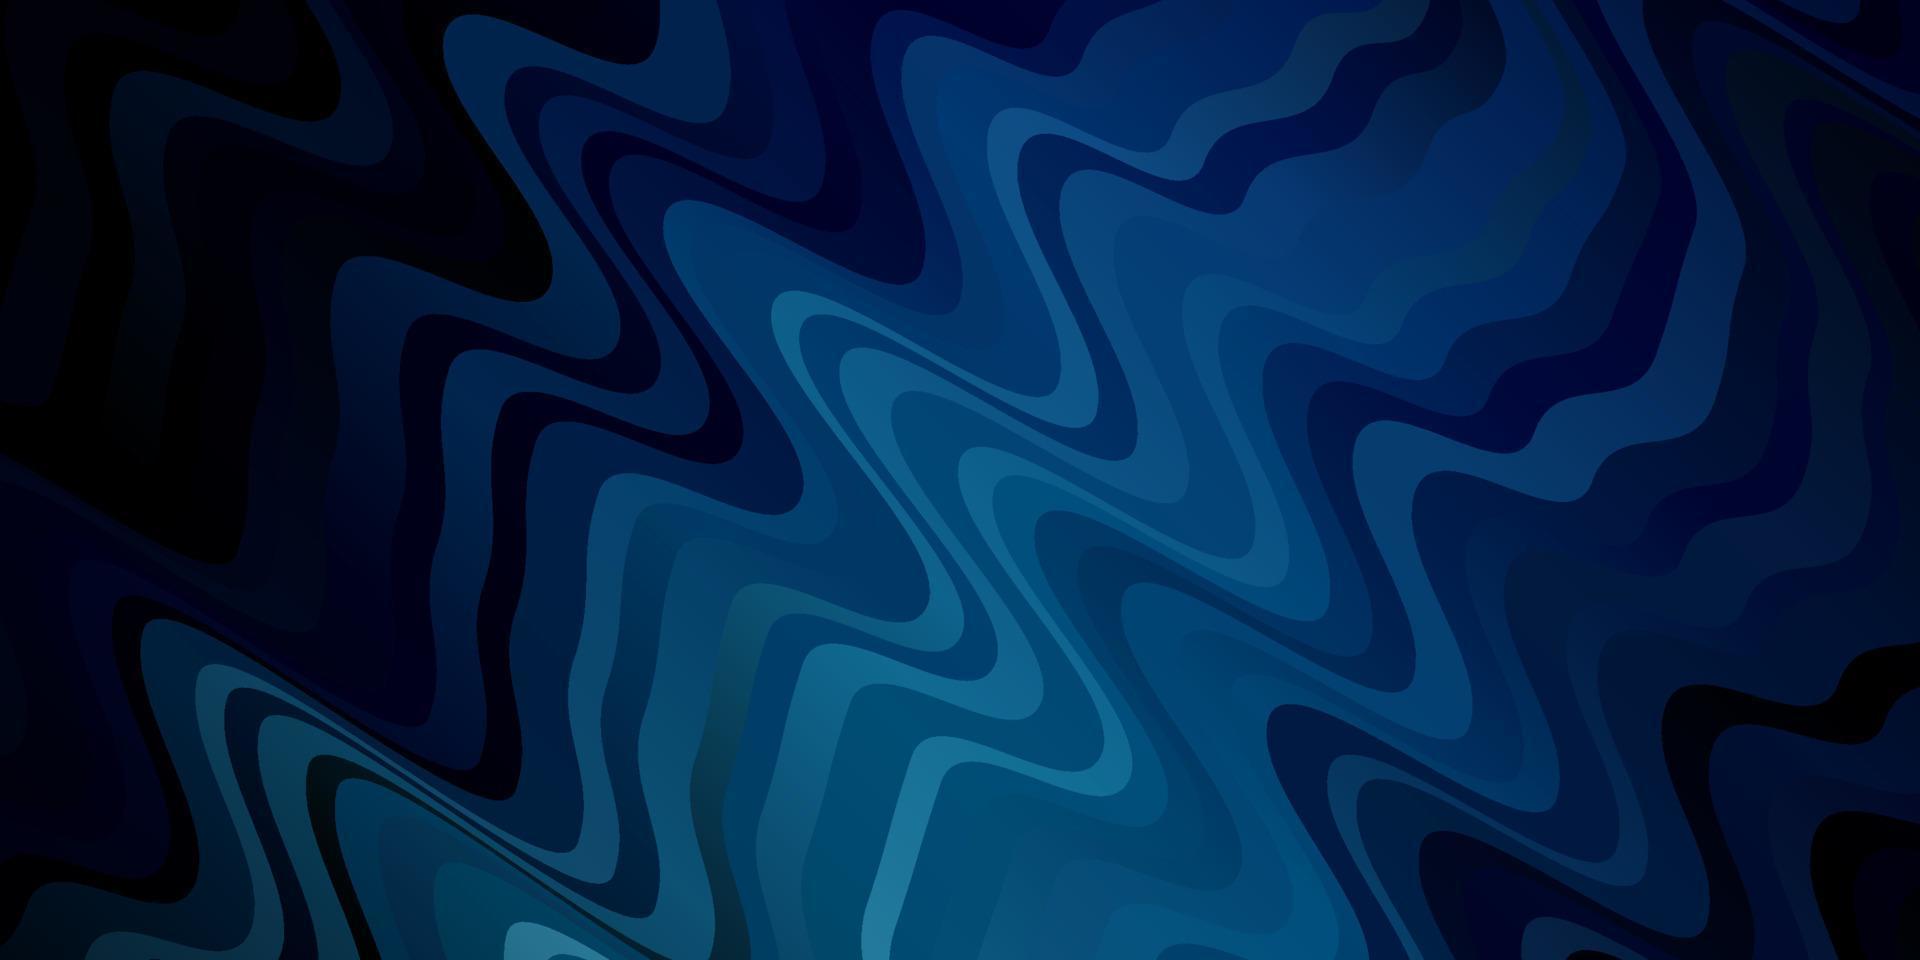 donkerblauw vector sjabloon met gebogen lijnen.